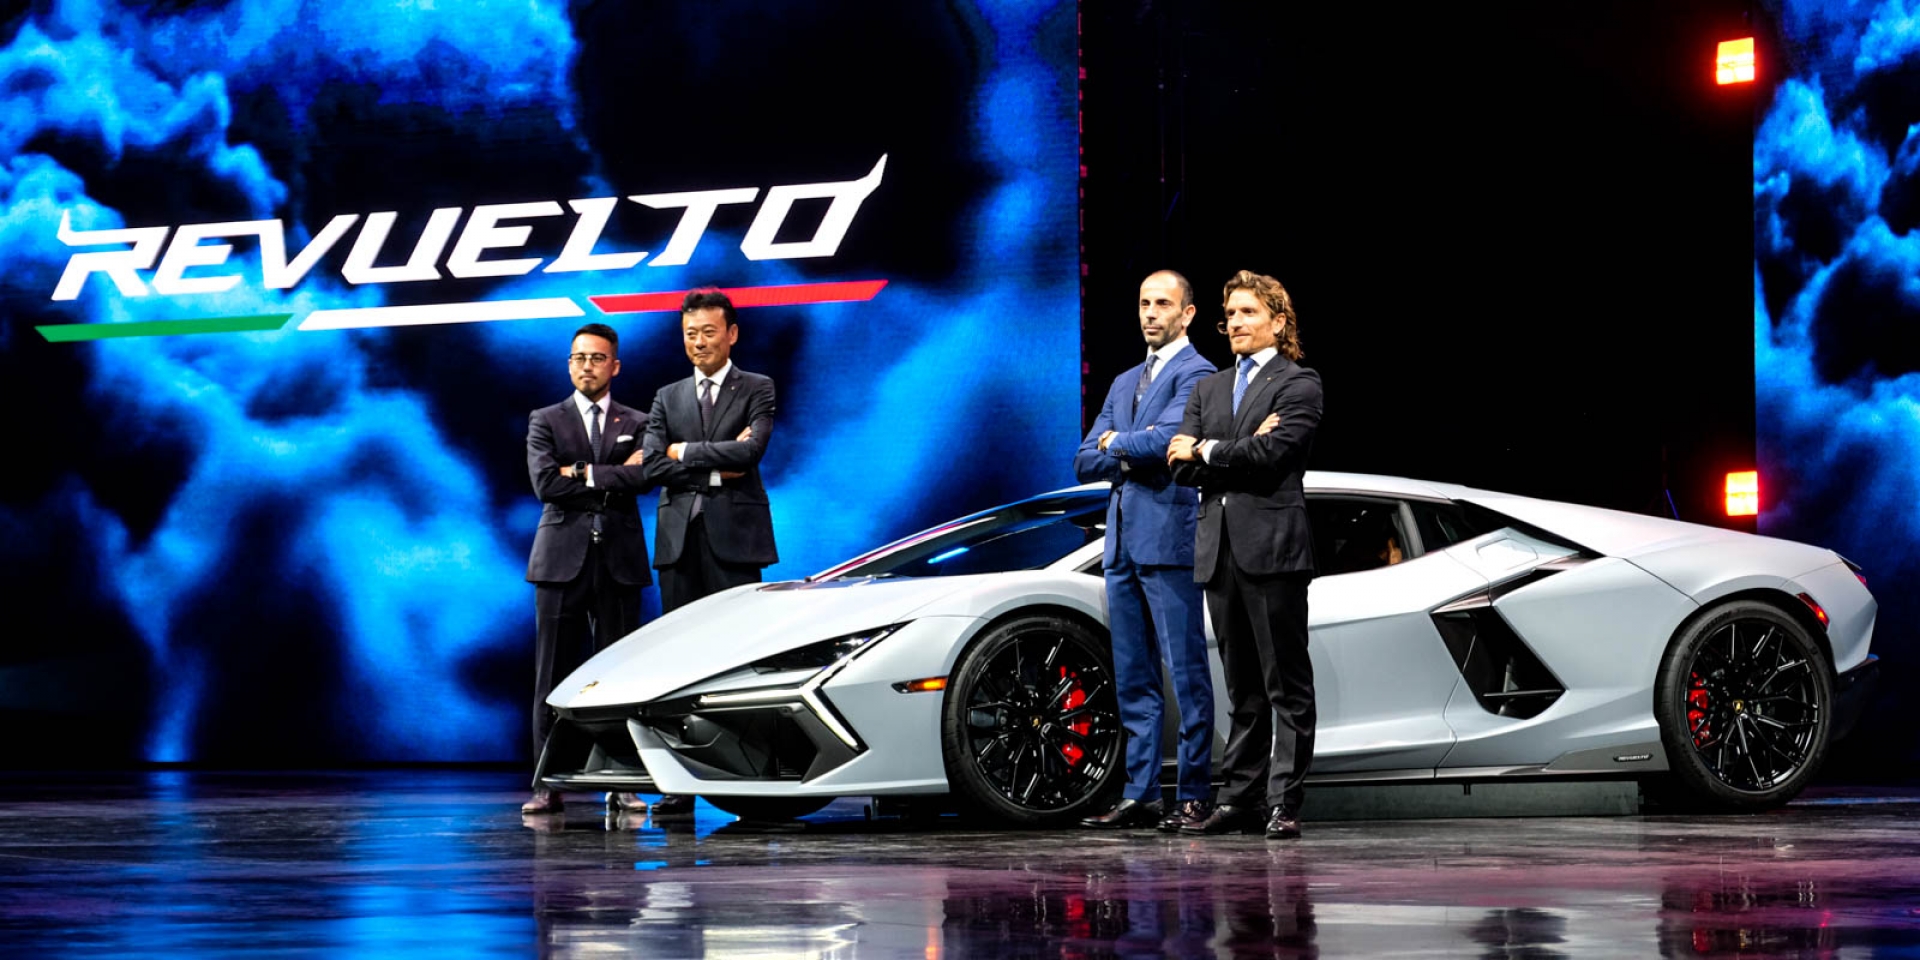 承襲經典·電掣未來 Lamborghini Revuelto 品牌首部V12 混合動力性能超跑震撼抵臺